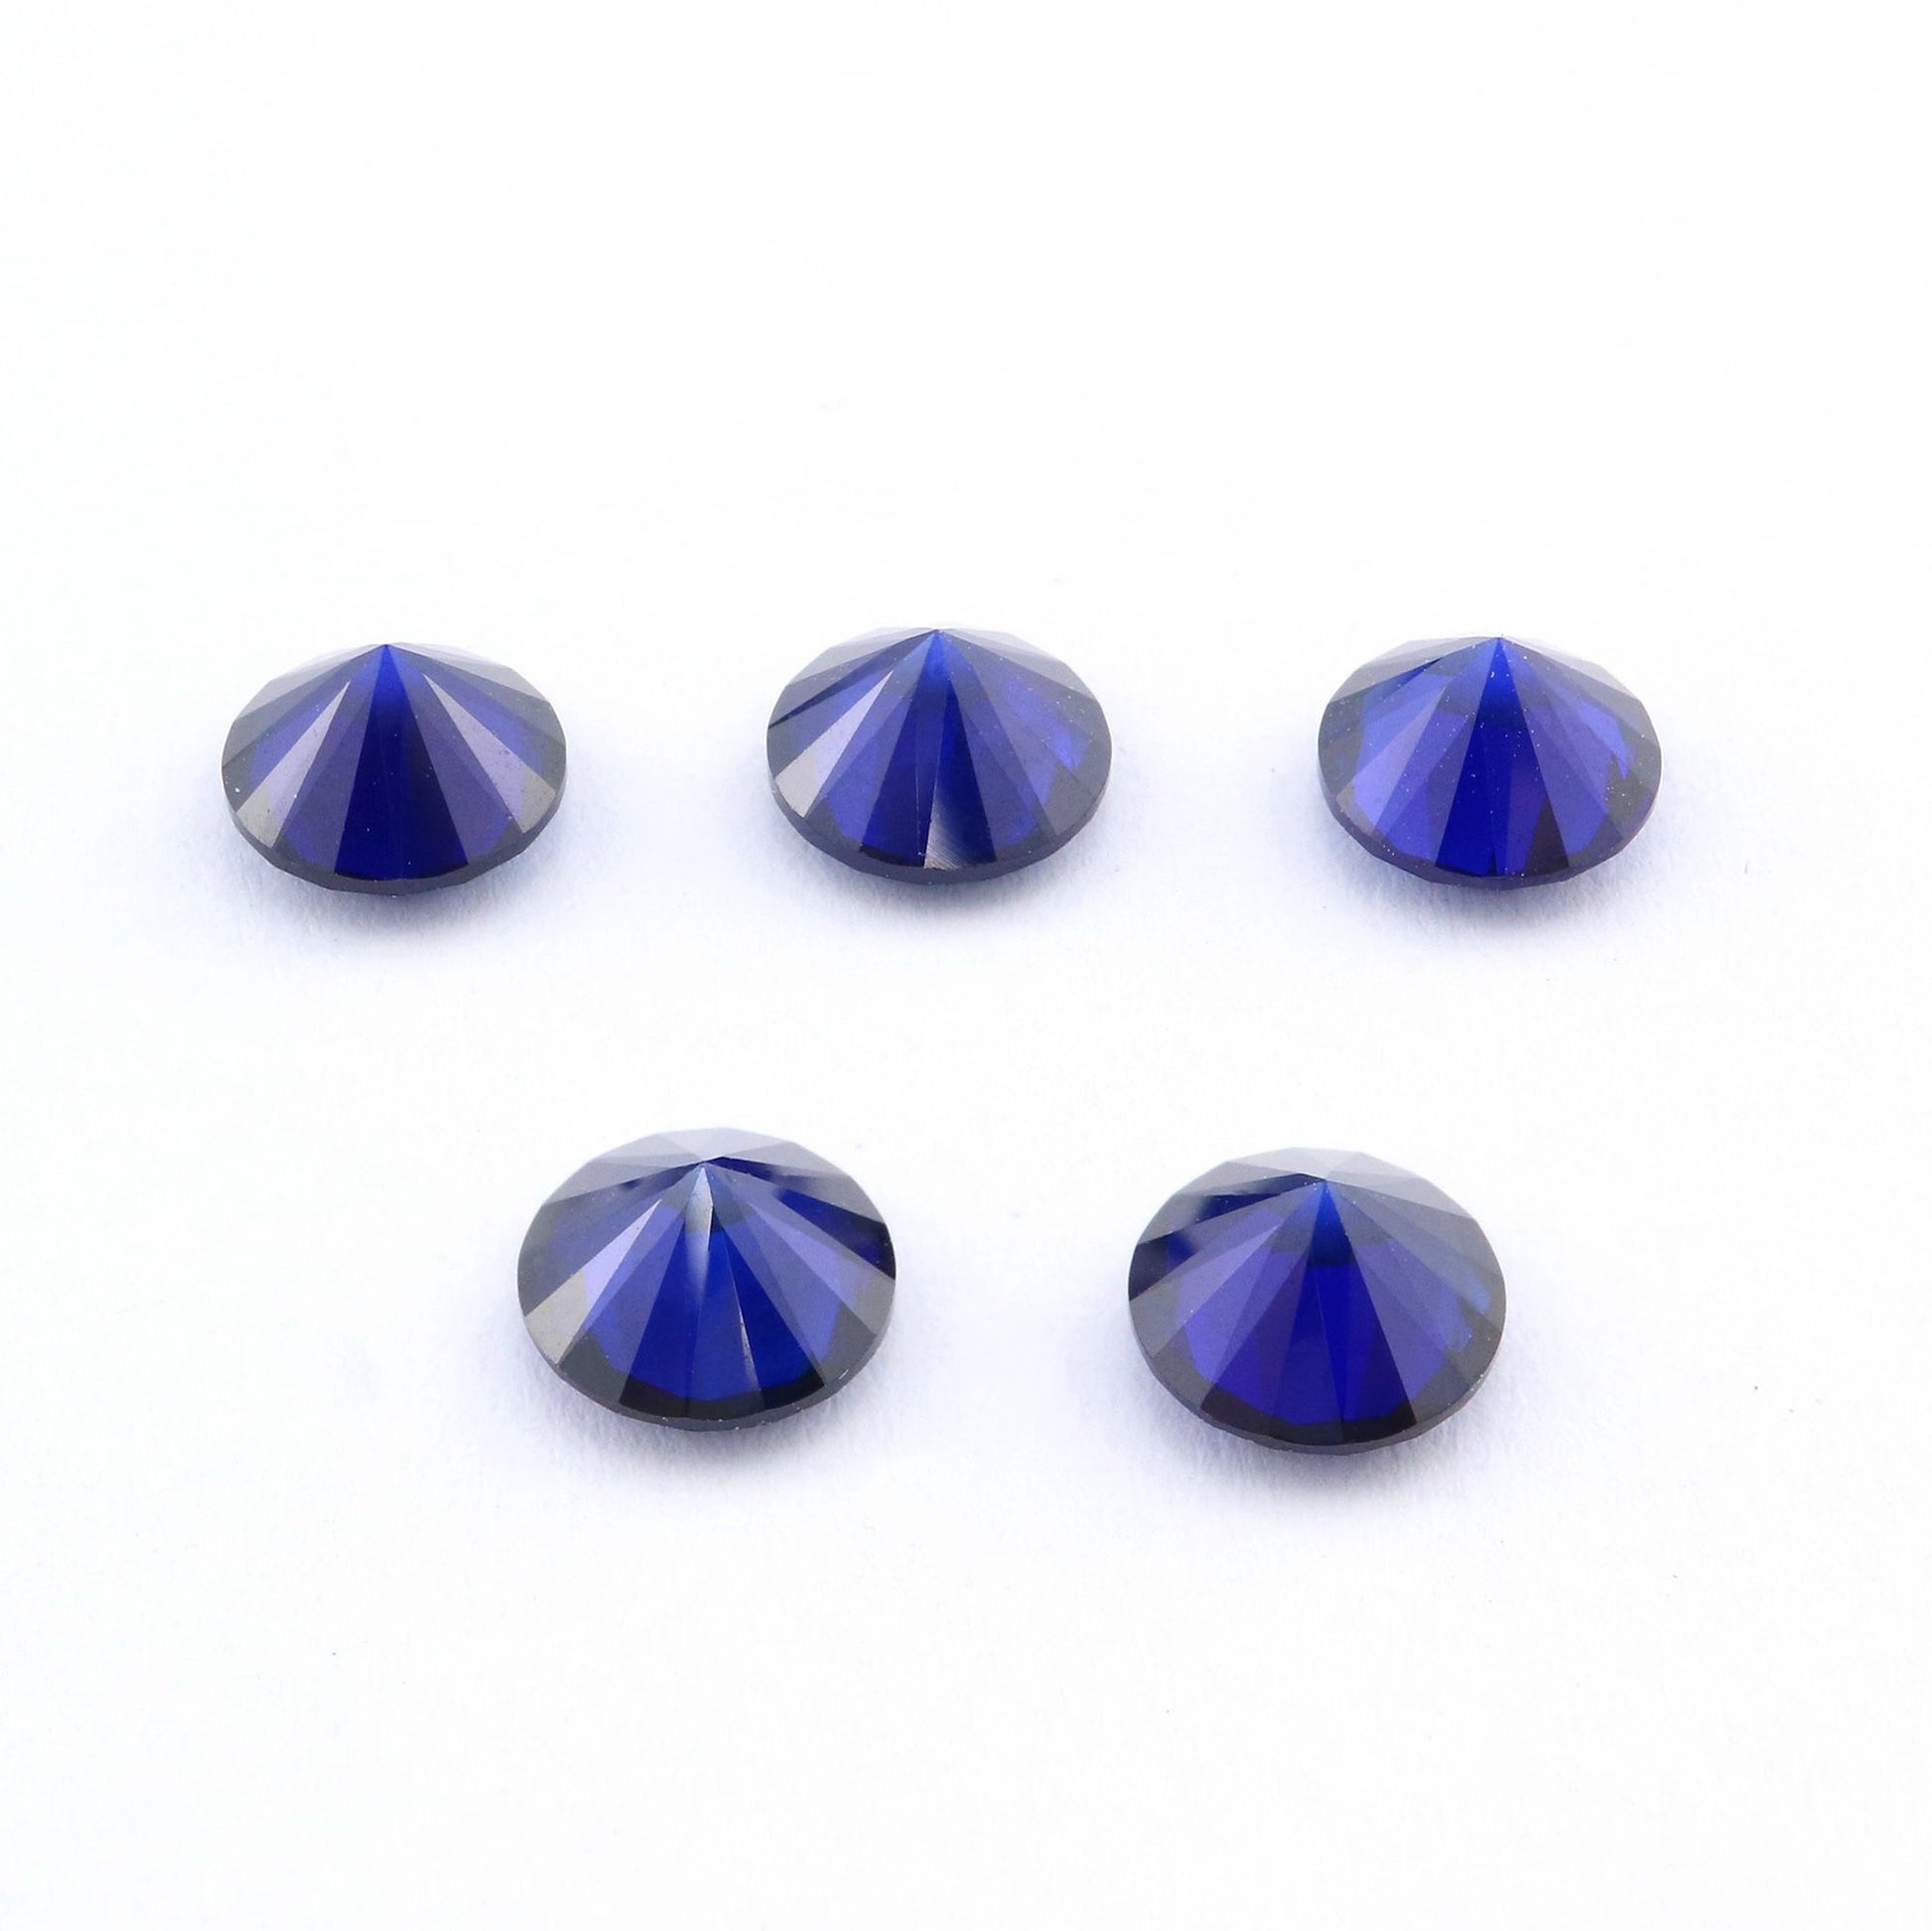 Five dark blue round cut lab created sapphire.